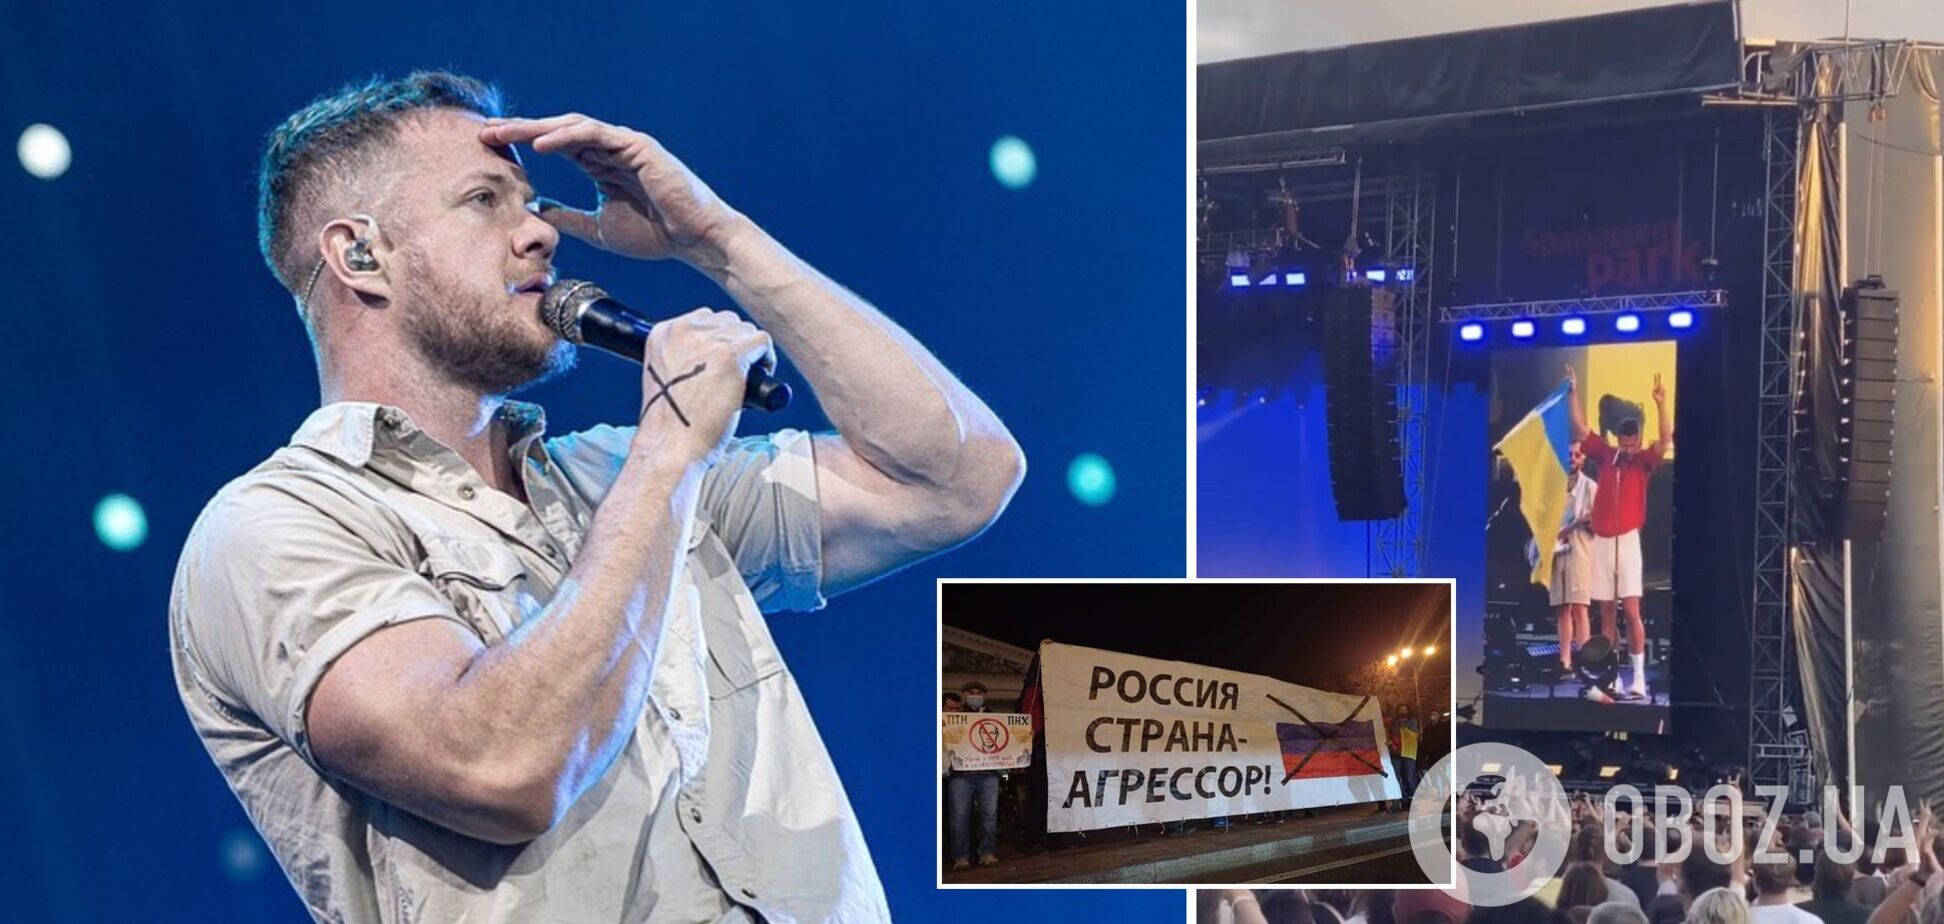 Хамили и не пропускали: передавшая флаг Украины солисту Imagine Dragons девушка рассказала, как россияне мешали ей это сделать